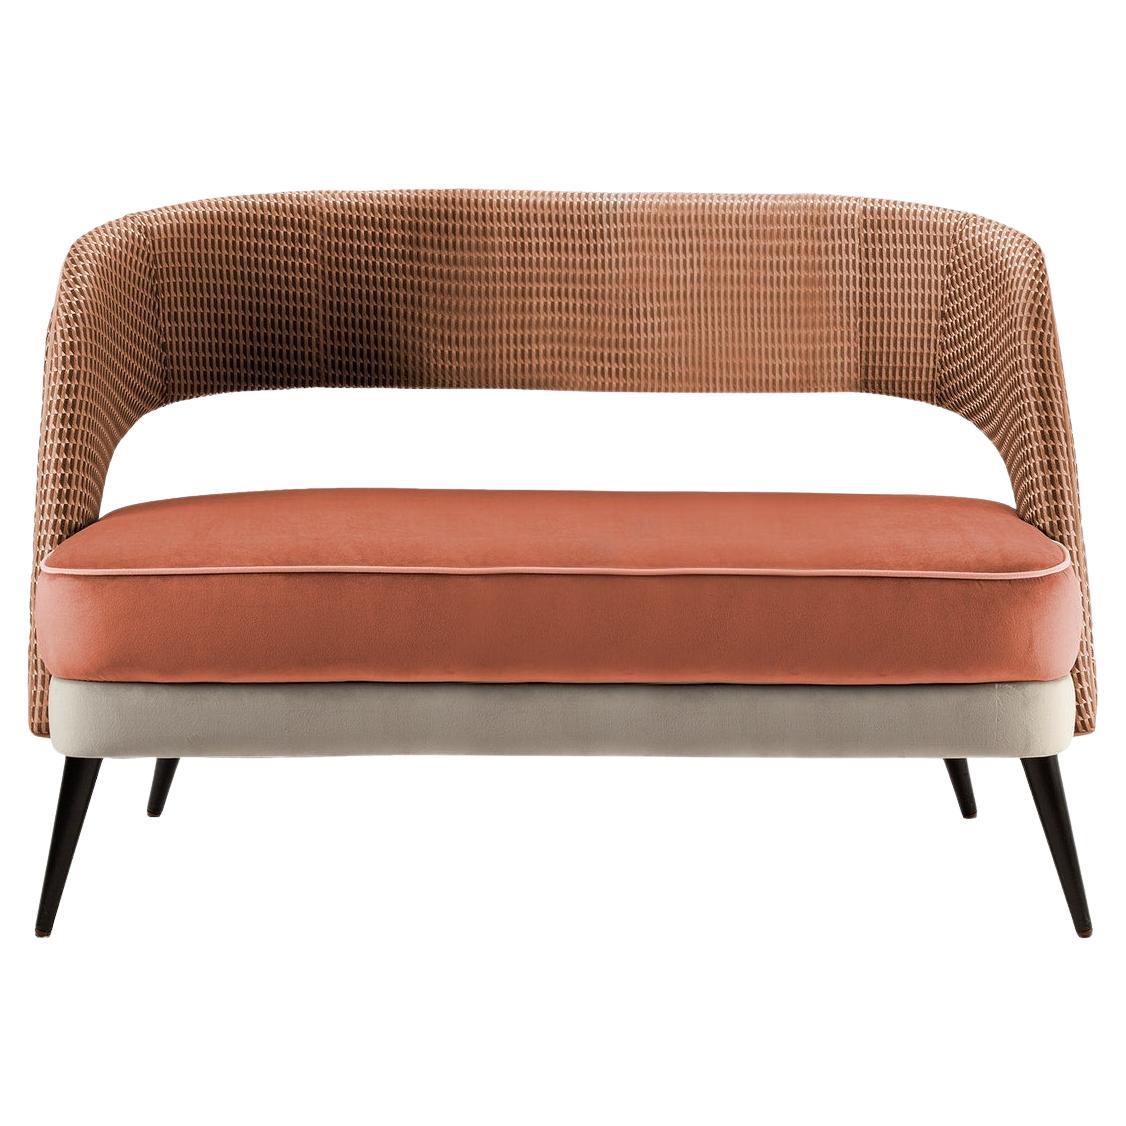 Confortable et élégant, le canapé Ava est une pièce polyvalente où la créativité ne connaît pas de limites. Les tissus, les bois massifs, les laques et les accessoires en laiton sont choisis et combinés de nombreuses façons pour produire la